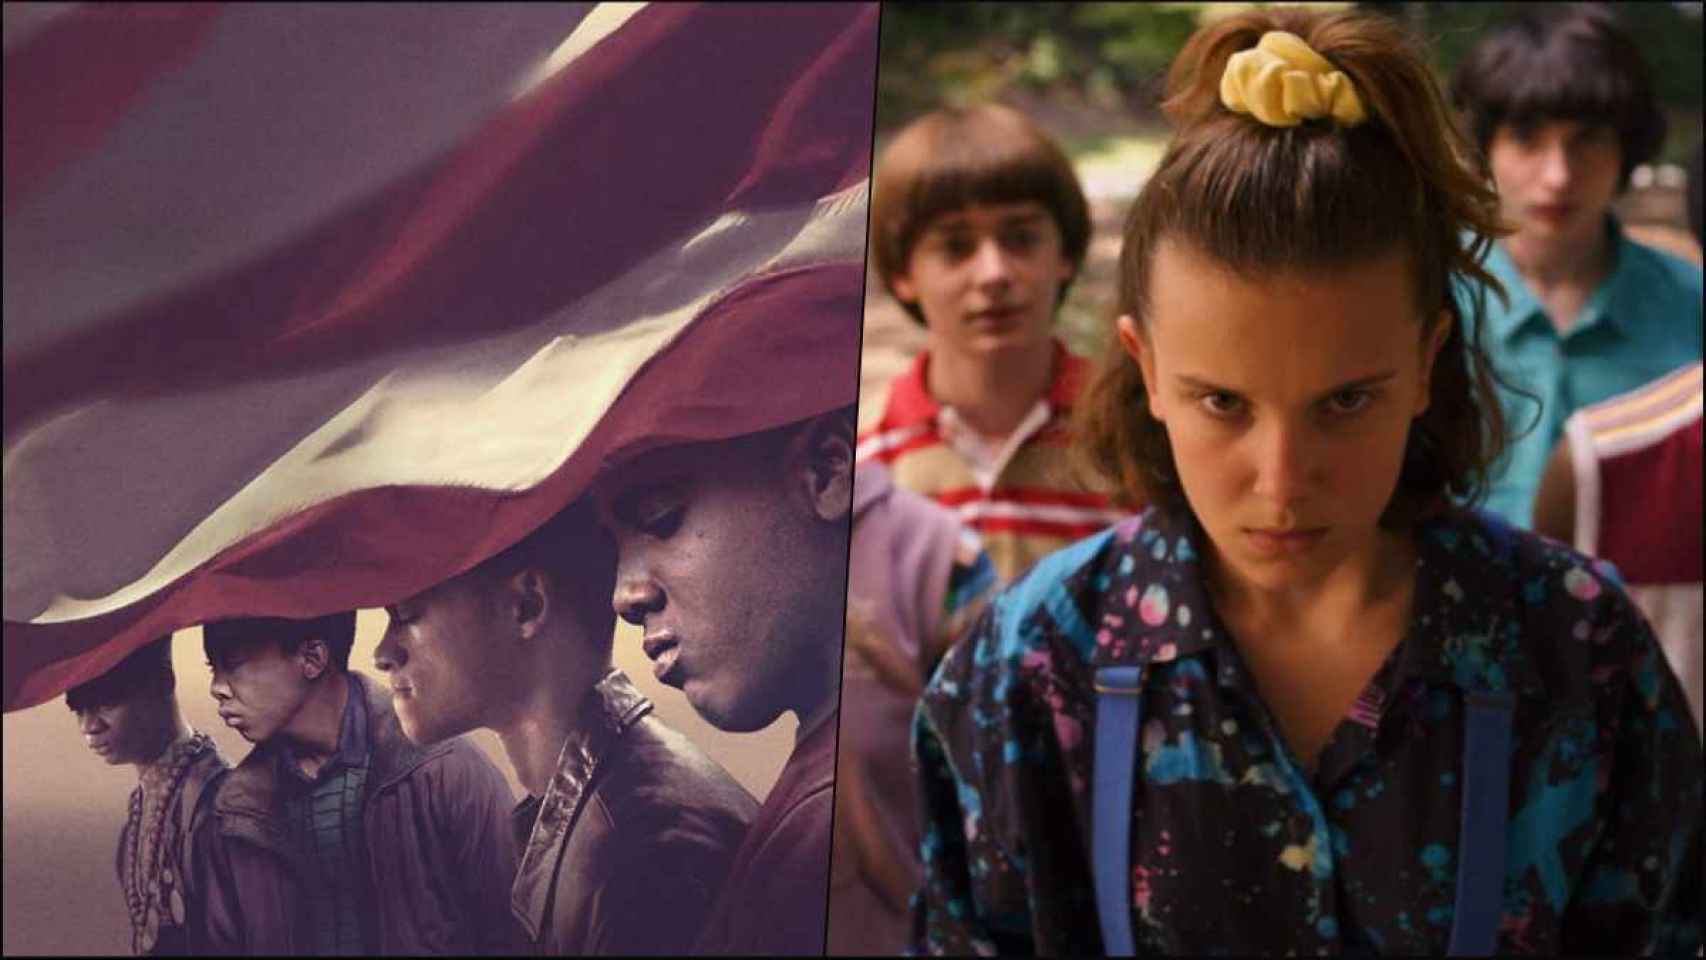 Imágenes 'Así nos ven' y 'Stranger Things', dos series originales de Netflix / NETFLIX